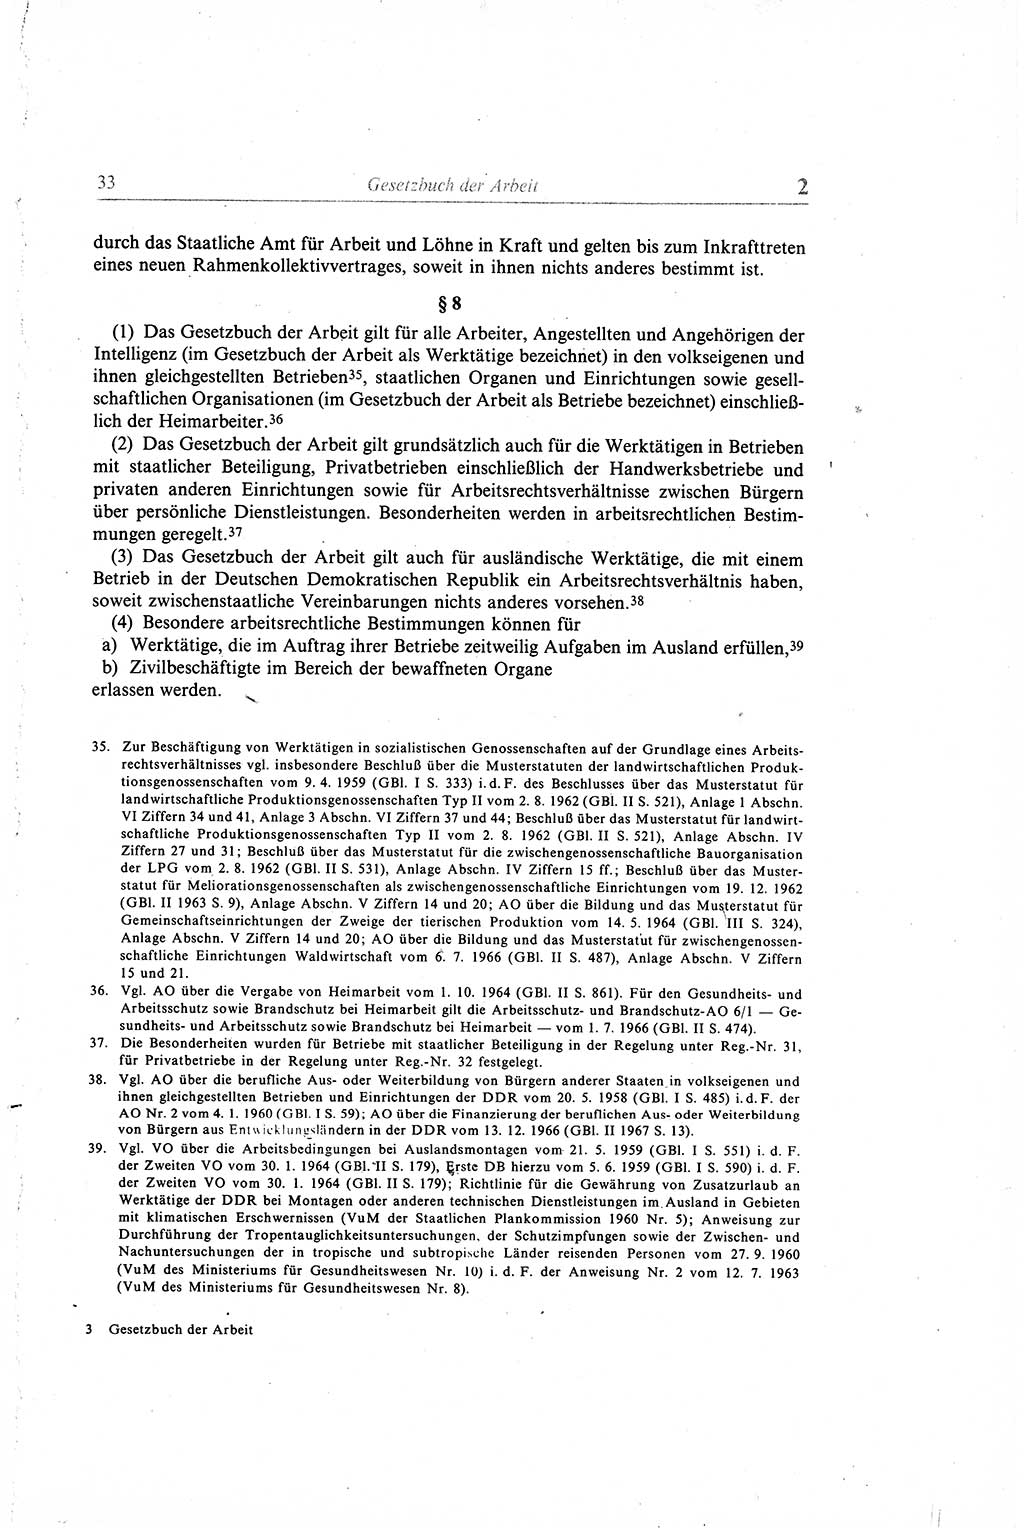 Gesetzbuch der Arbeit (GBA) und andere ausgewählte rechtliche Bestimmungen [Deutsche Demokratische Republik (DDR)] 1968, Seite 33 (GBA DDR 1968, S. 33)